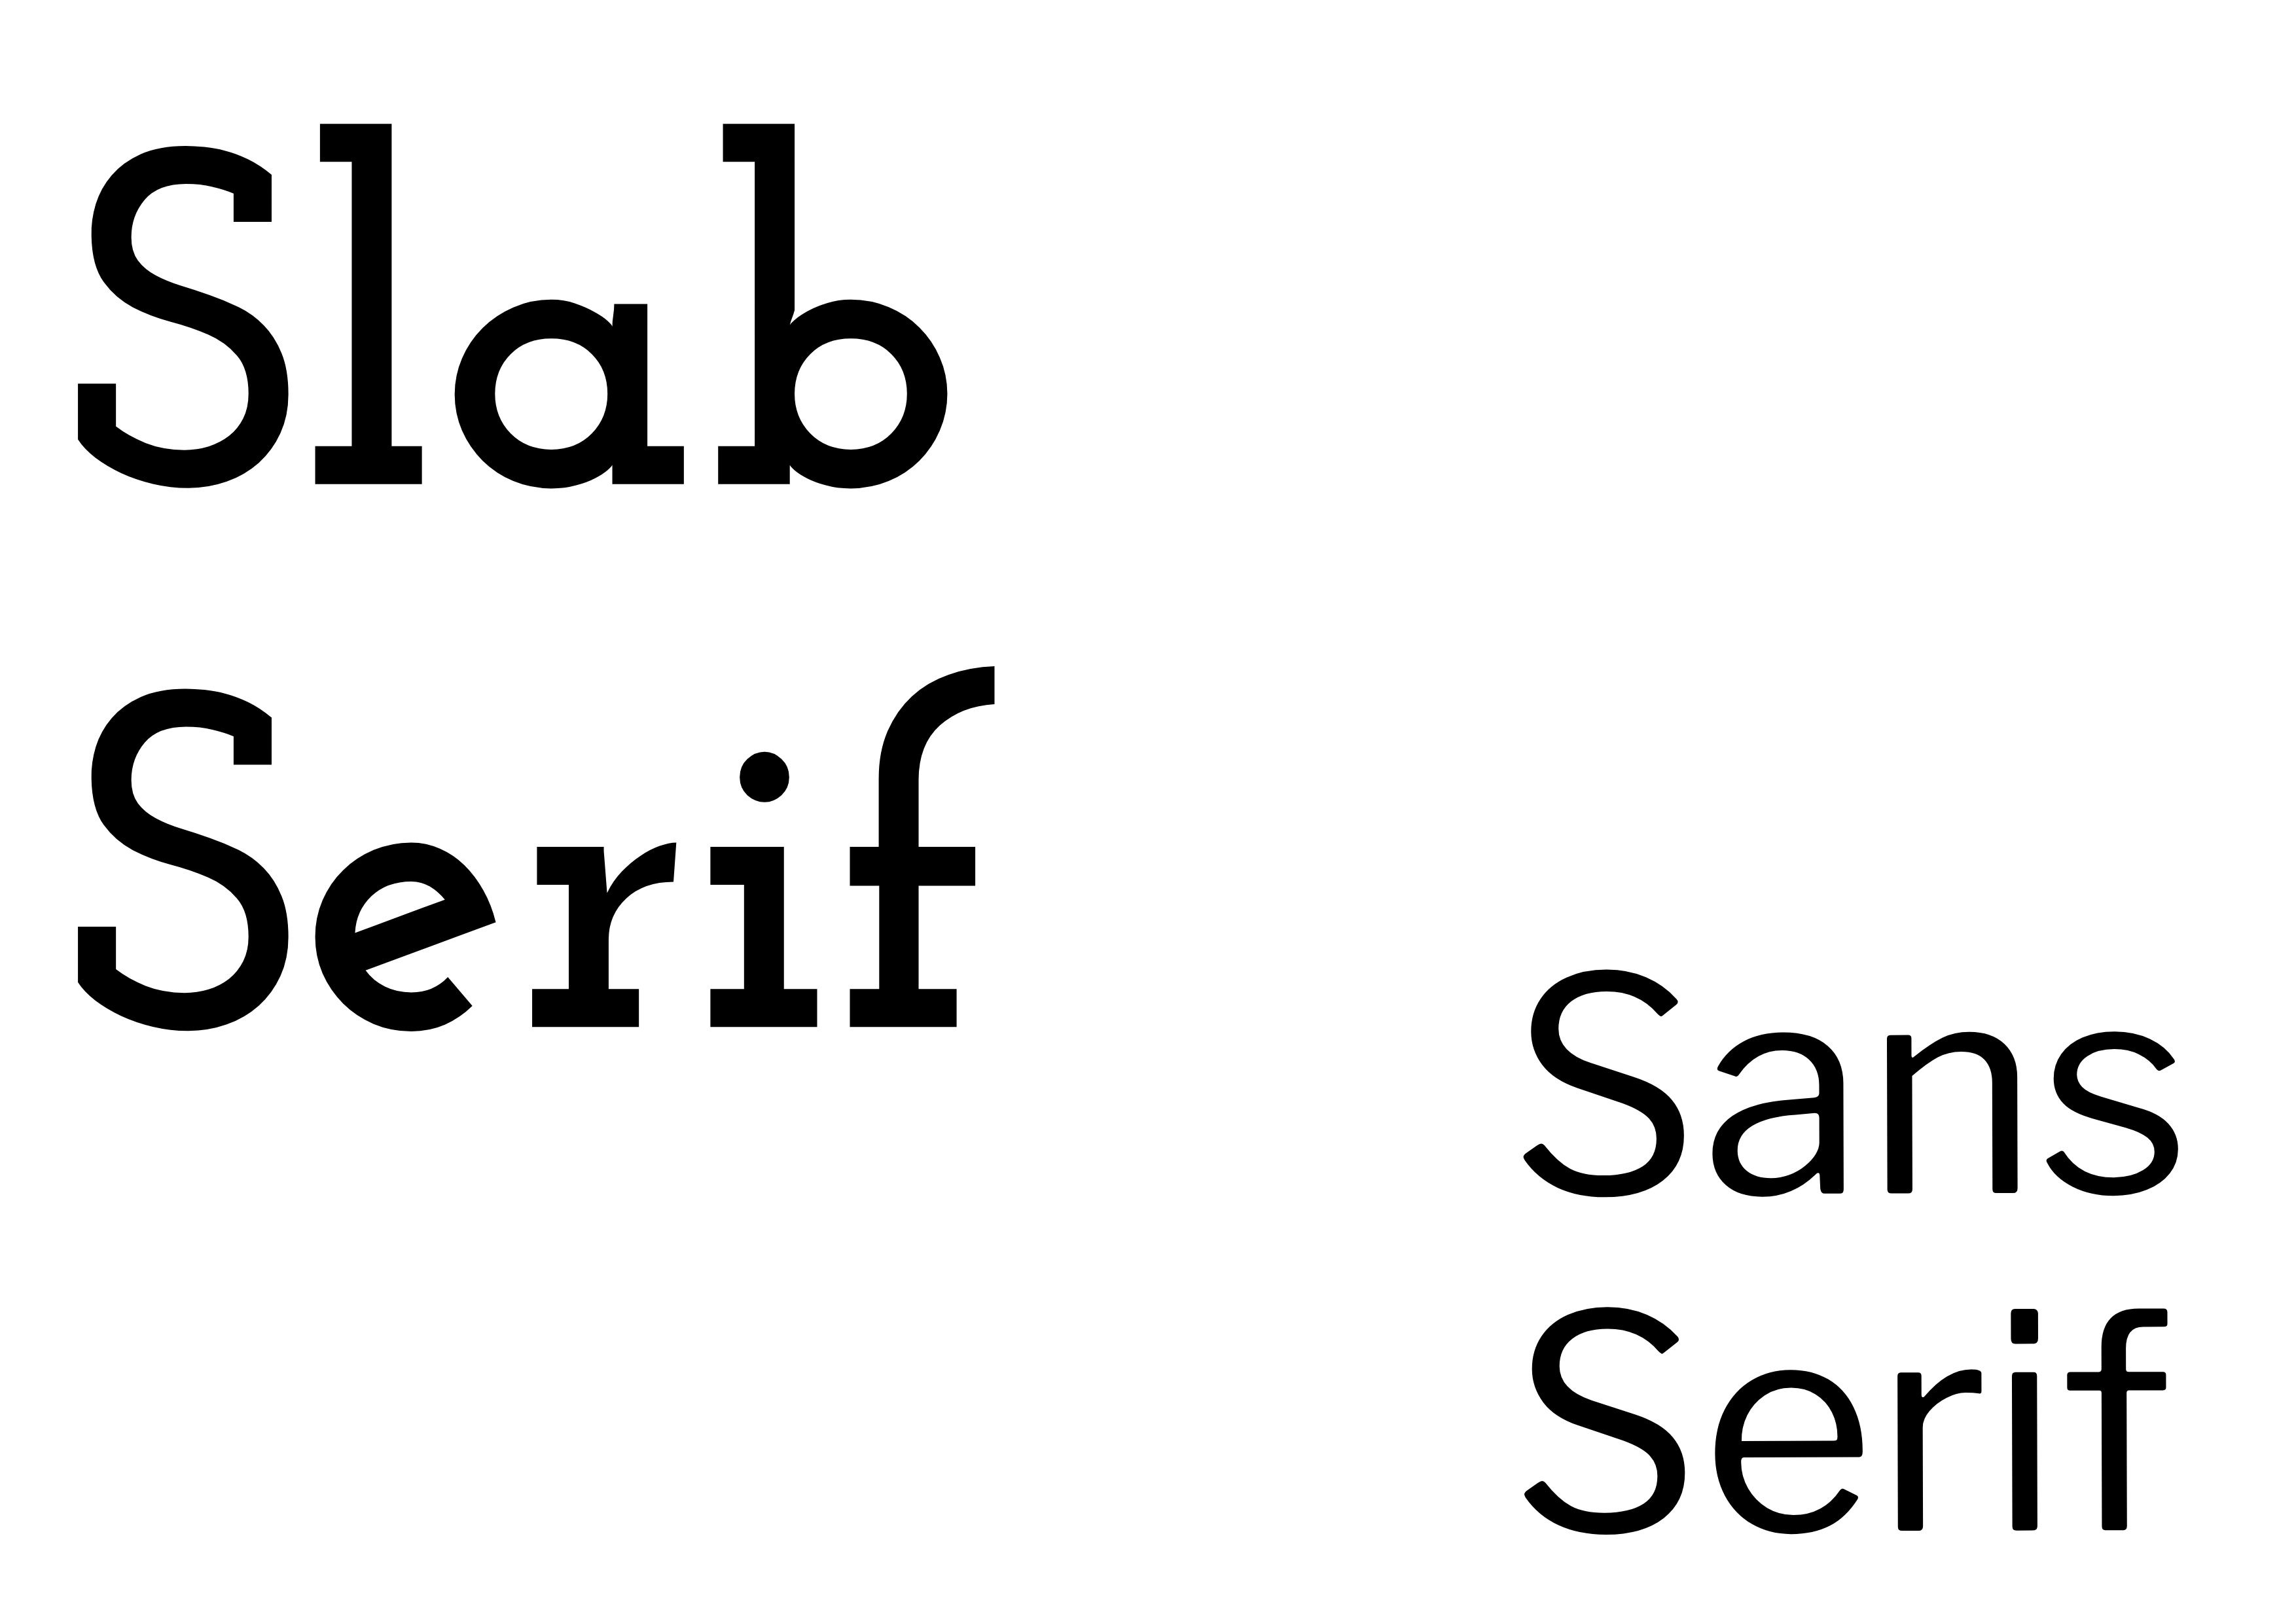 Emparelhamento de Fontes - 'Slab Serif' em negrito preto à esquerda com 'Sans Serif' em preto, menor à direita - O guia completo de fontes: 5 tipos essenciais de fontes em tipografia - Imagem